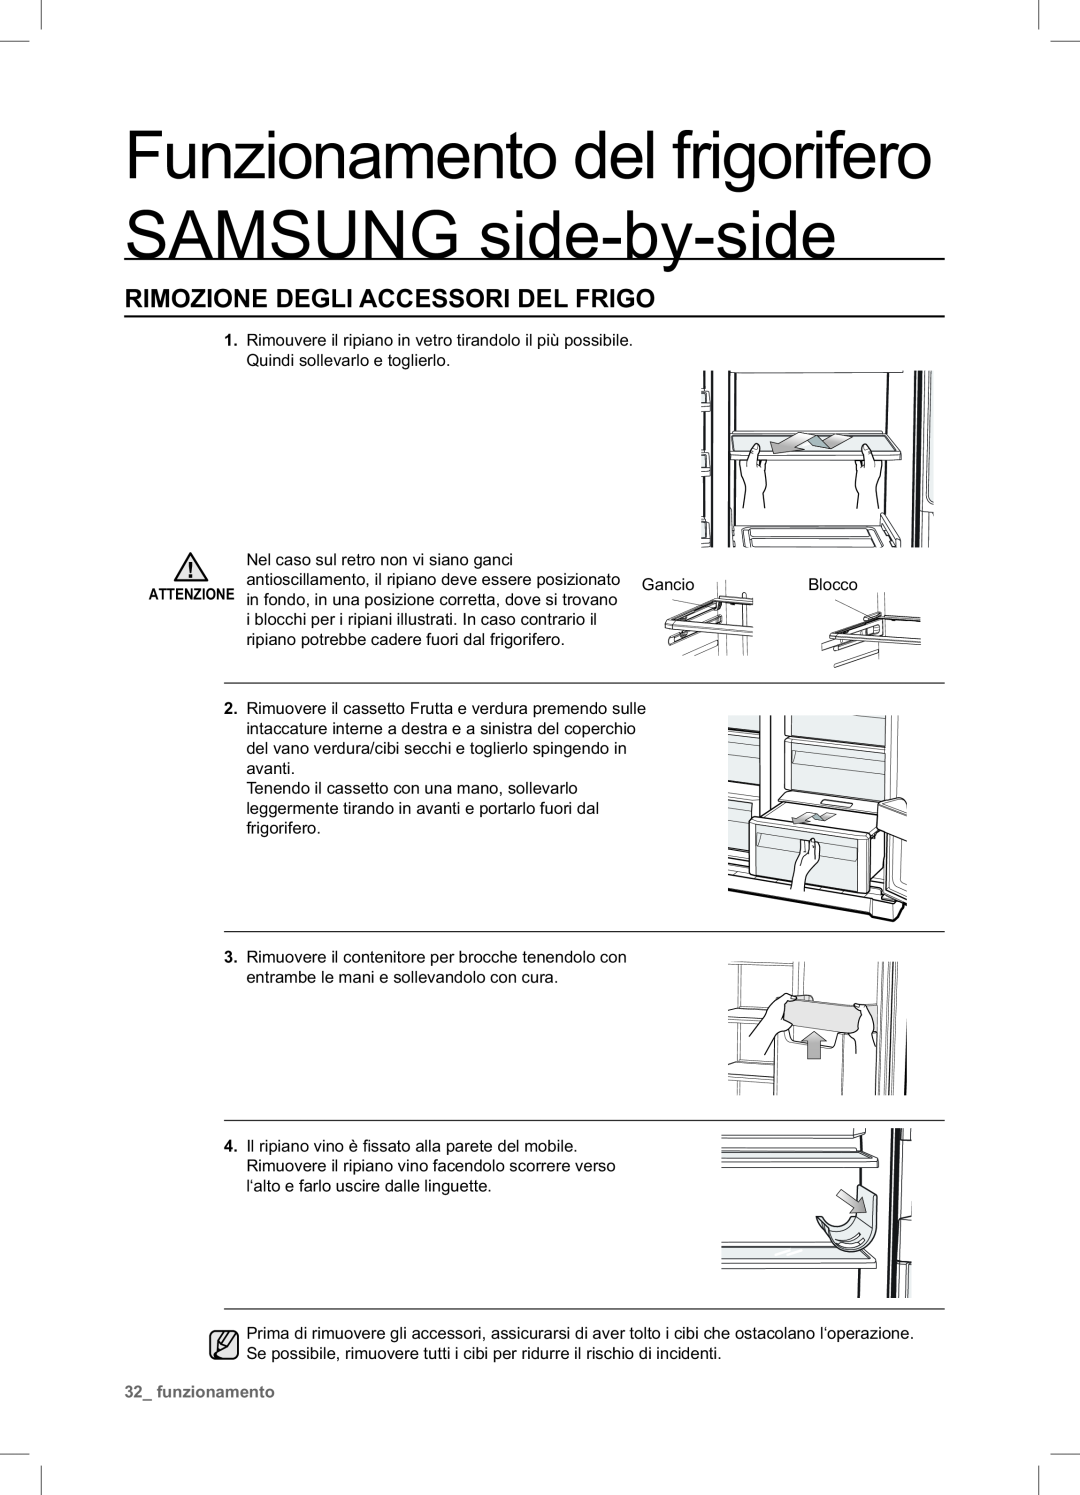 Samsung RSA1NTPE1/XES manual Rimozione Degli Accessori Del Frigo, Funzionamento del frigorifero SAMSUNG side-by-side 